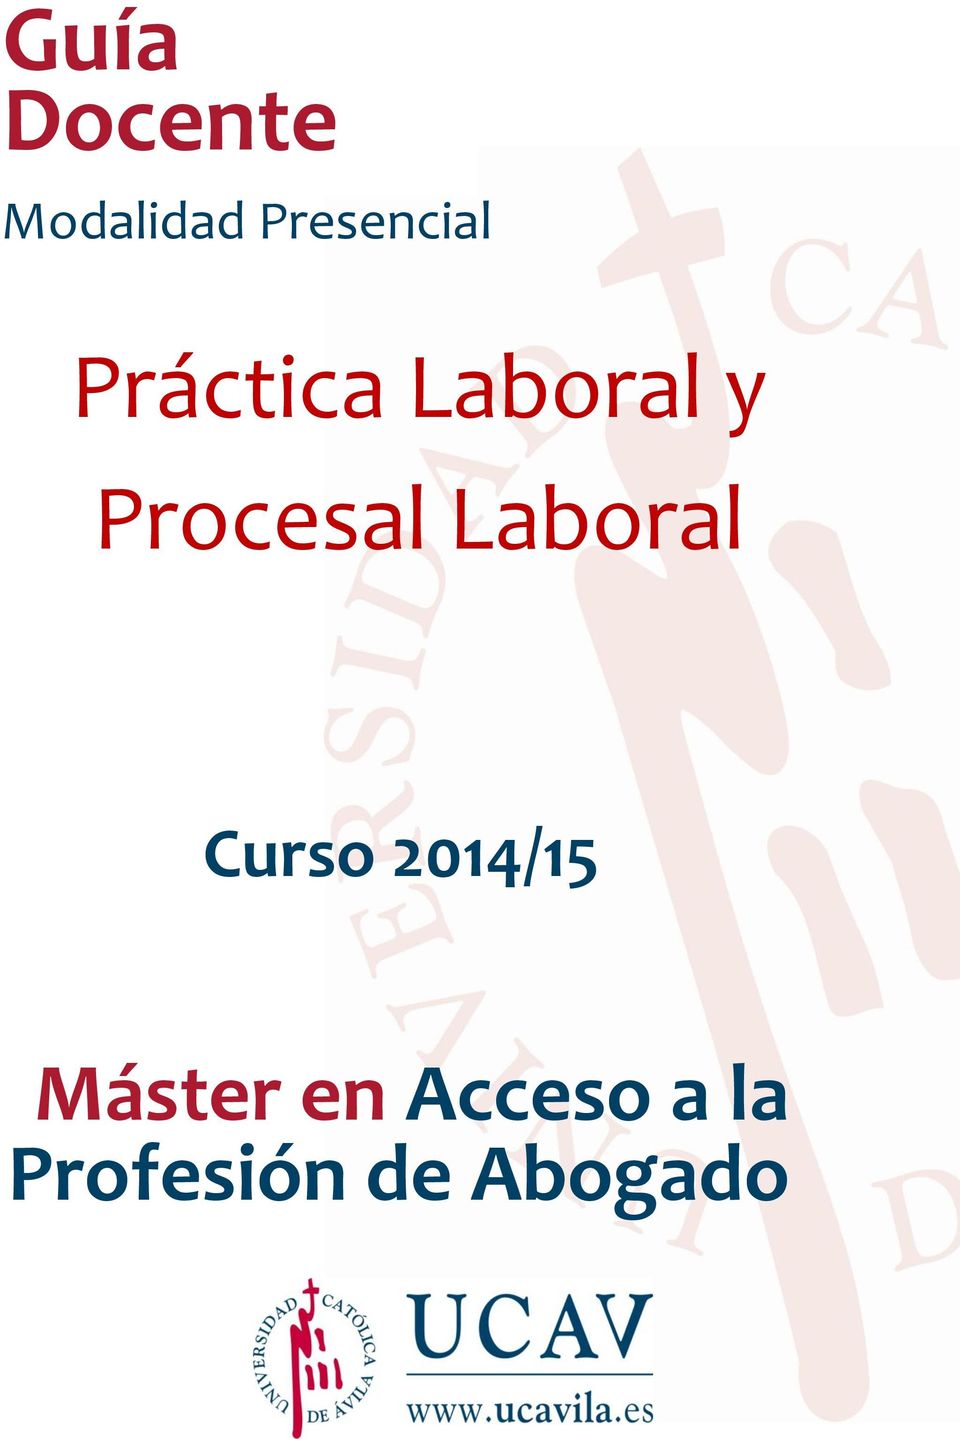 Procesal Laboral Curso 2014/15